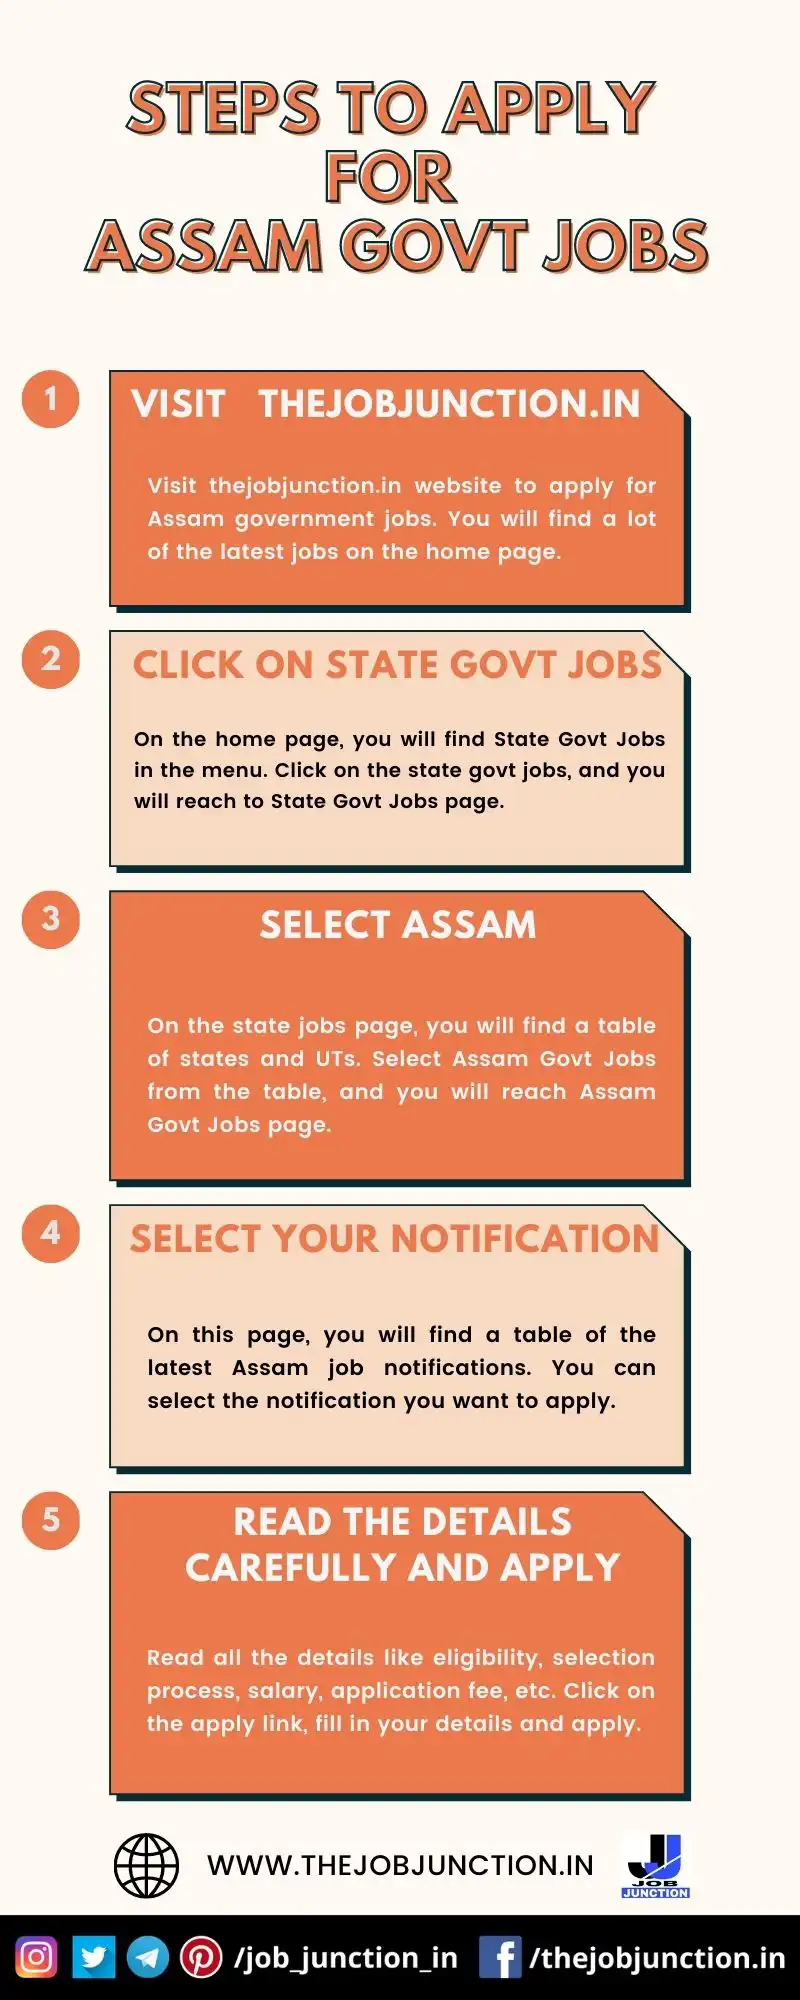 STEPS TO APPLY FOR ASSAM GOVT JOBS